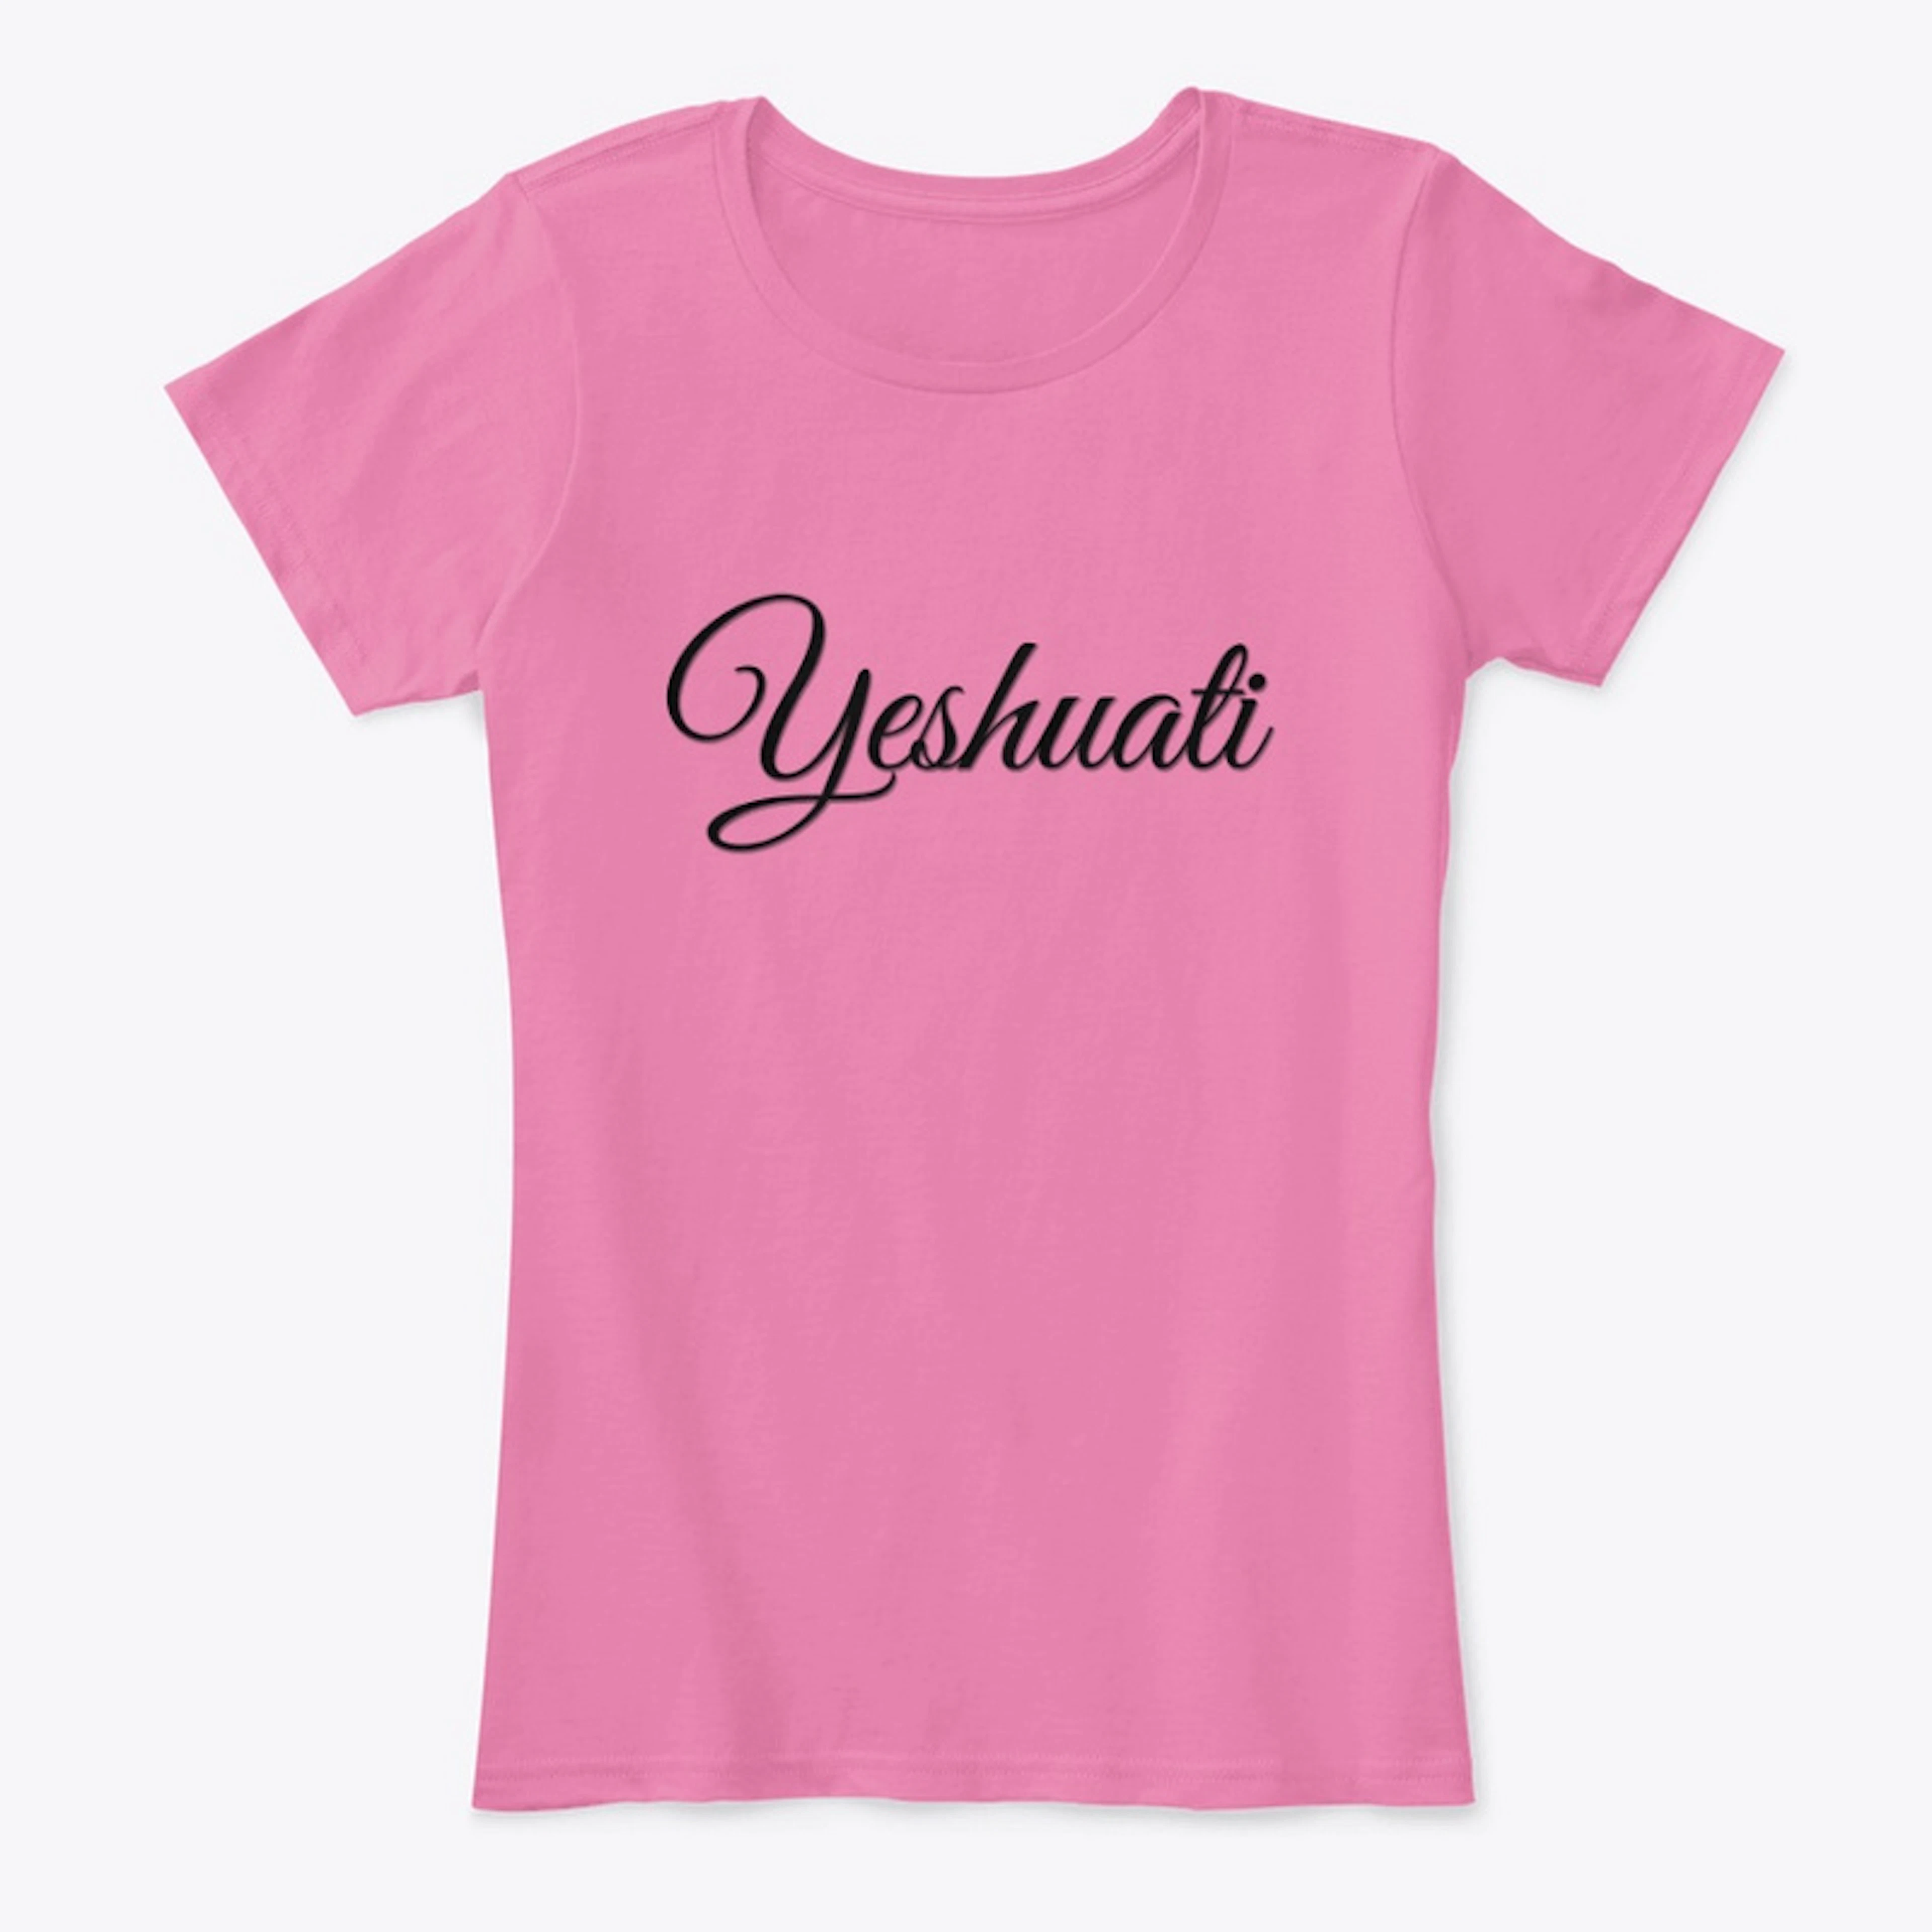 YESHUATI  (My Salvation) - Tshirt